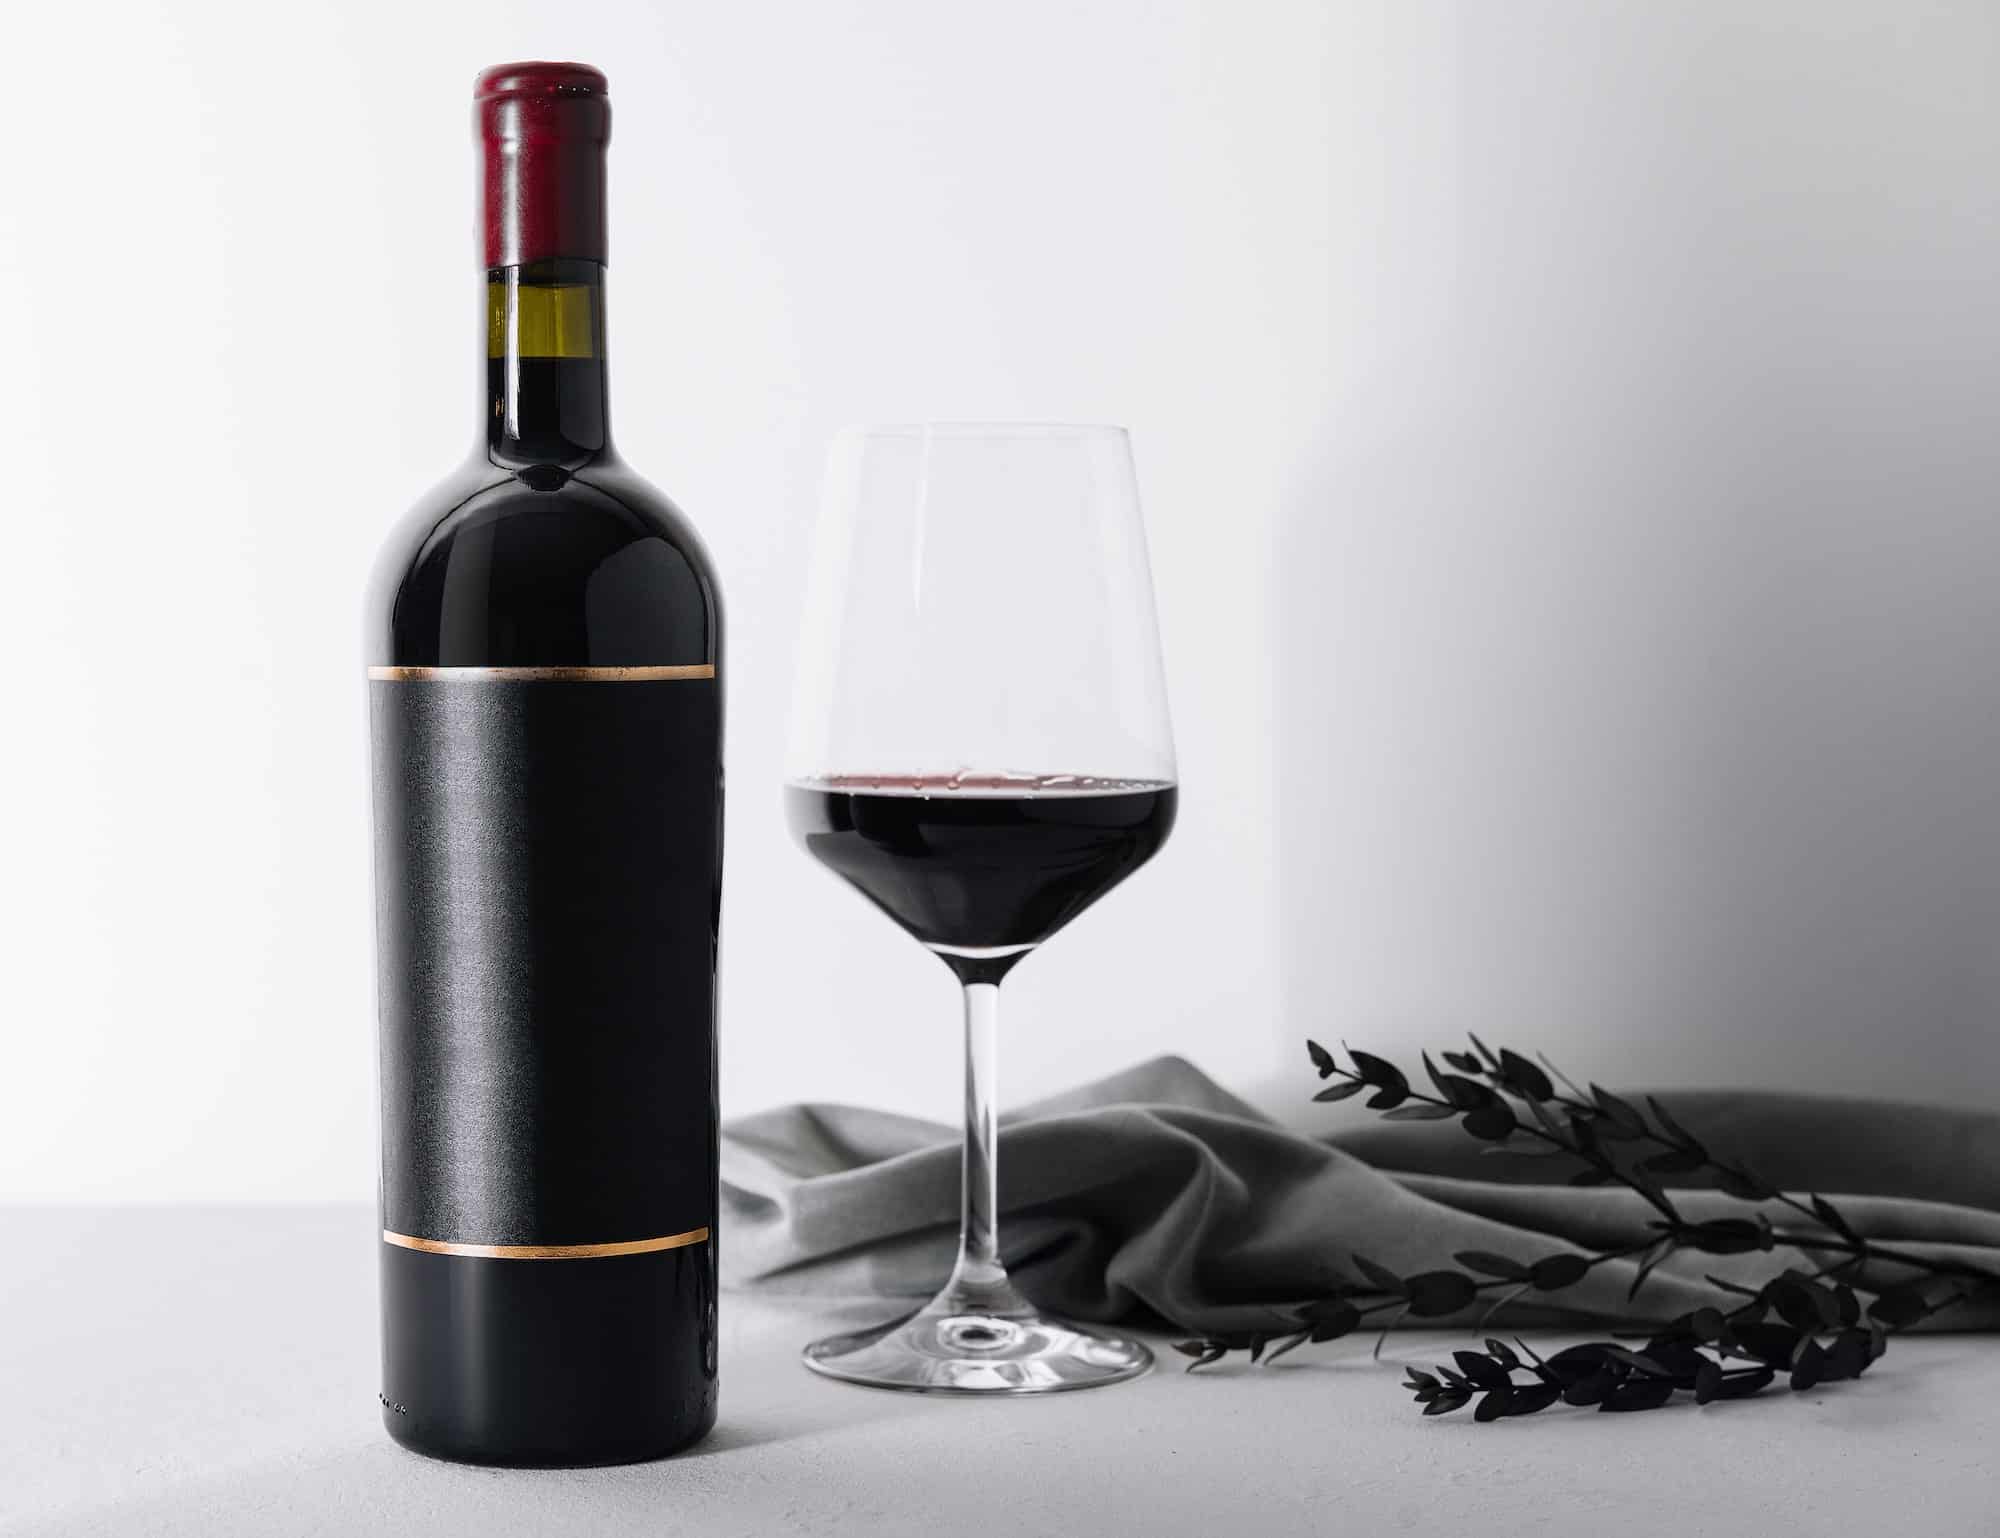 Qu’est-ce qui distingue l’élaboration des vins du Château Pichon Baron en termes de qualité ?